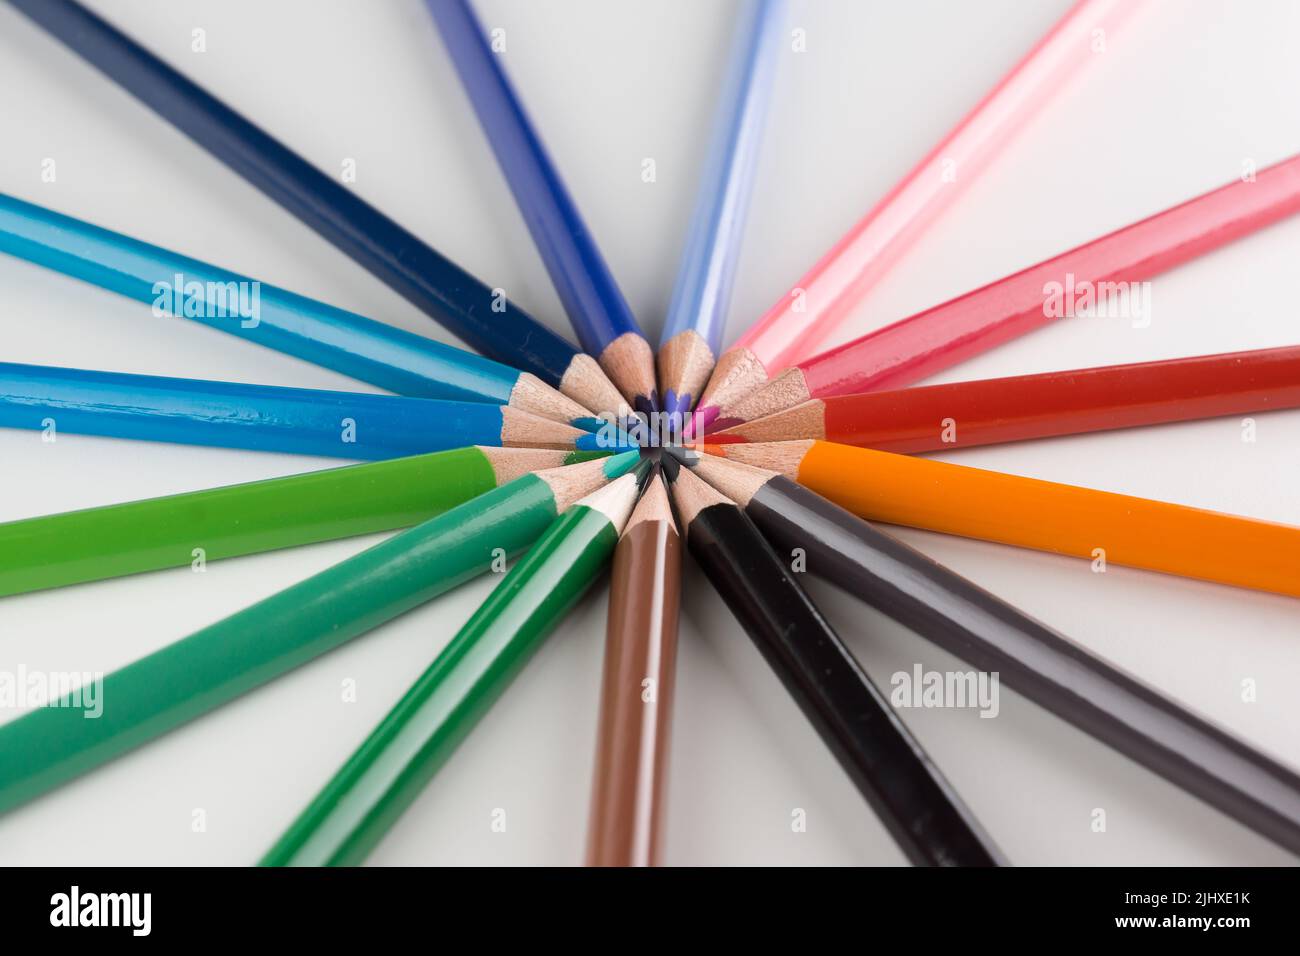 juego de lápices de colores alineados con un arco sobre fondo blanco Foto de stock